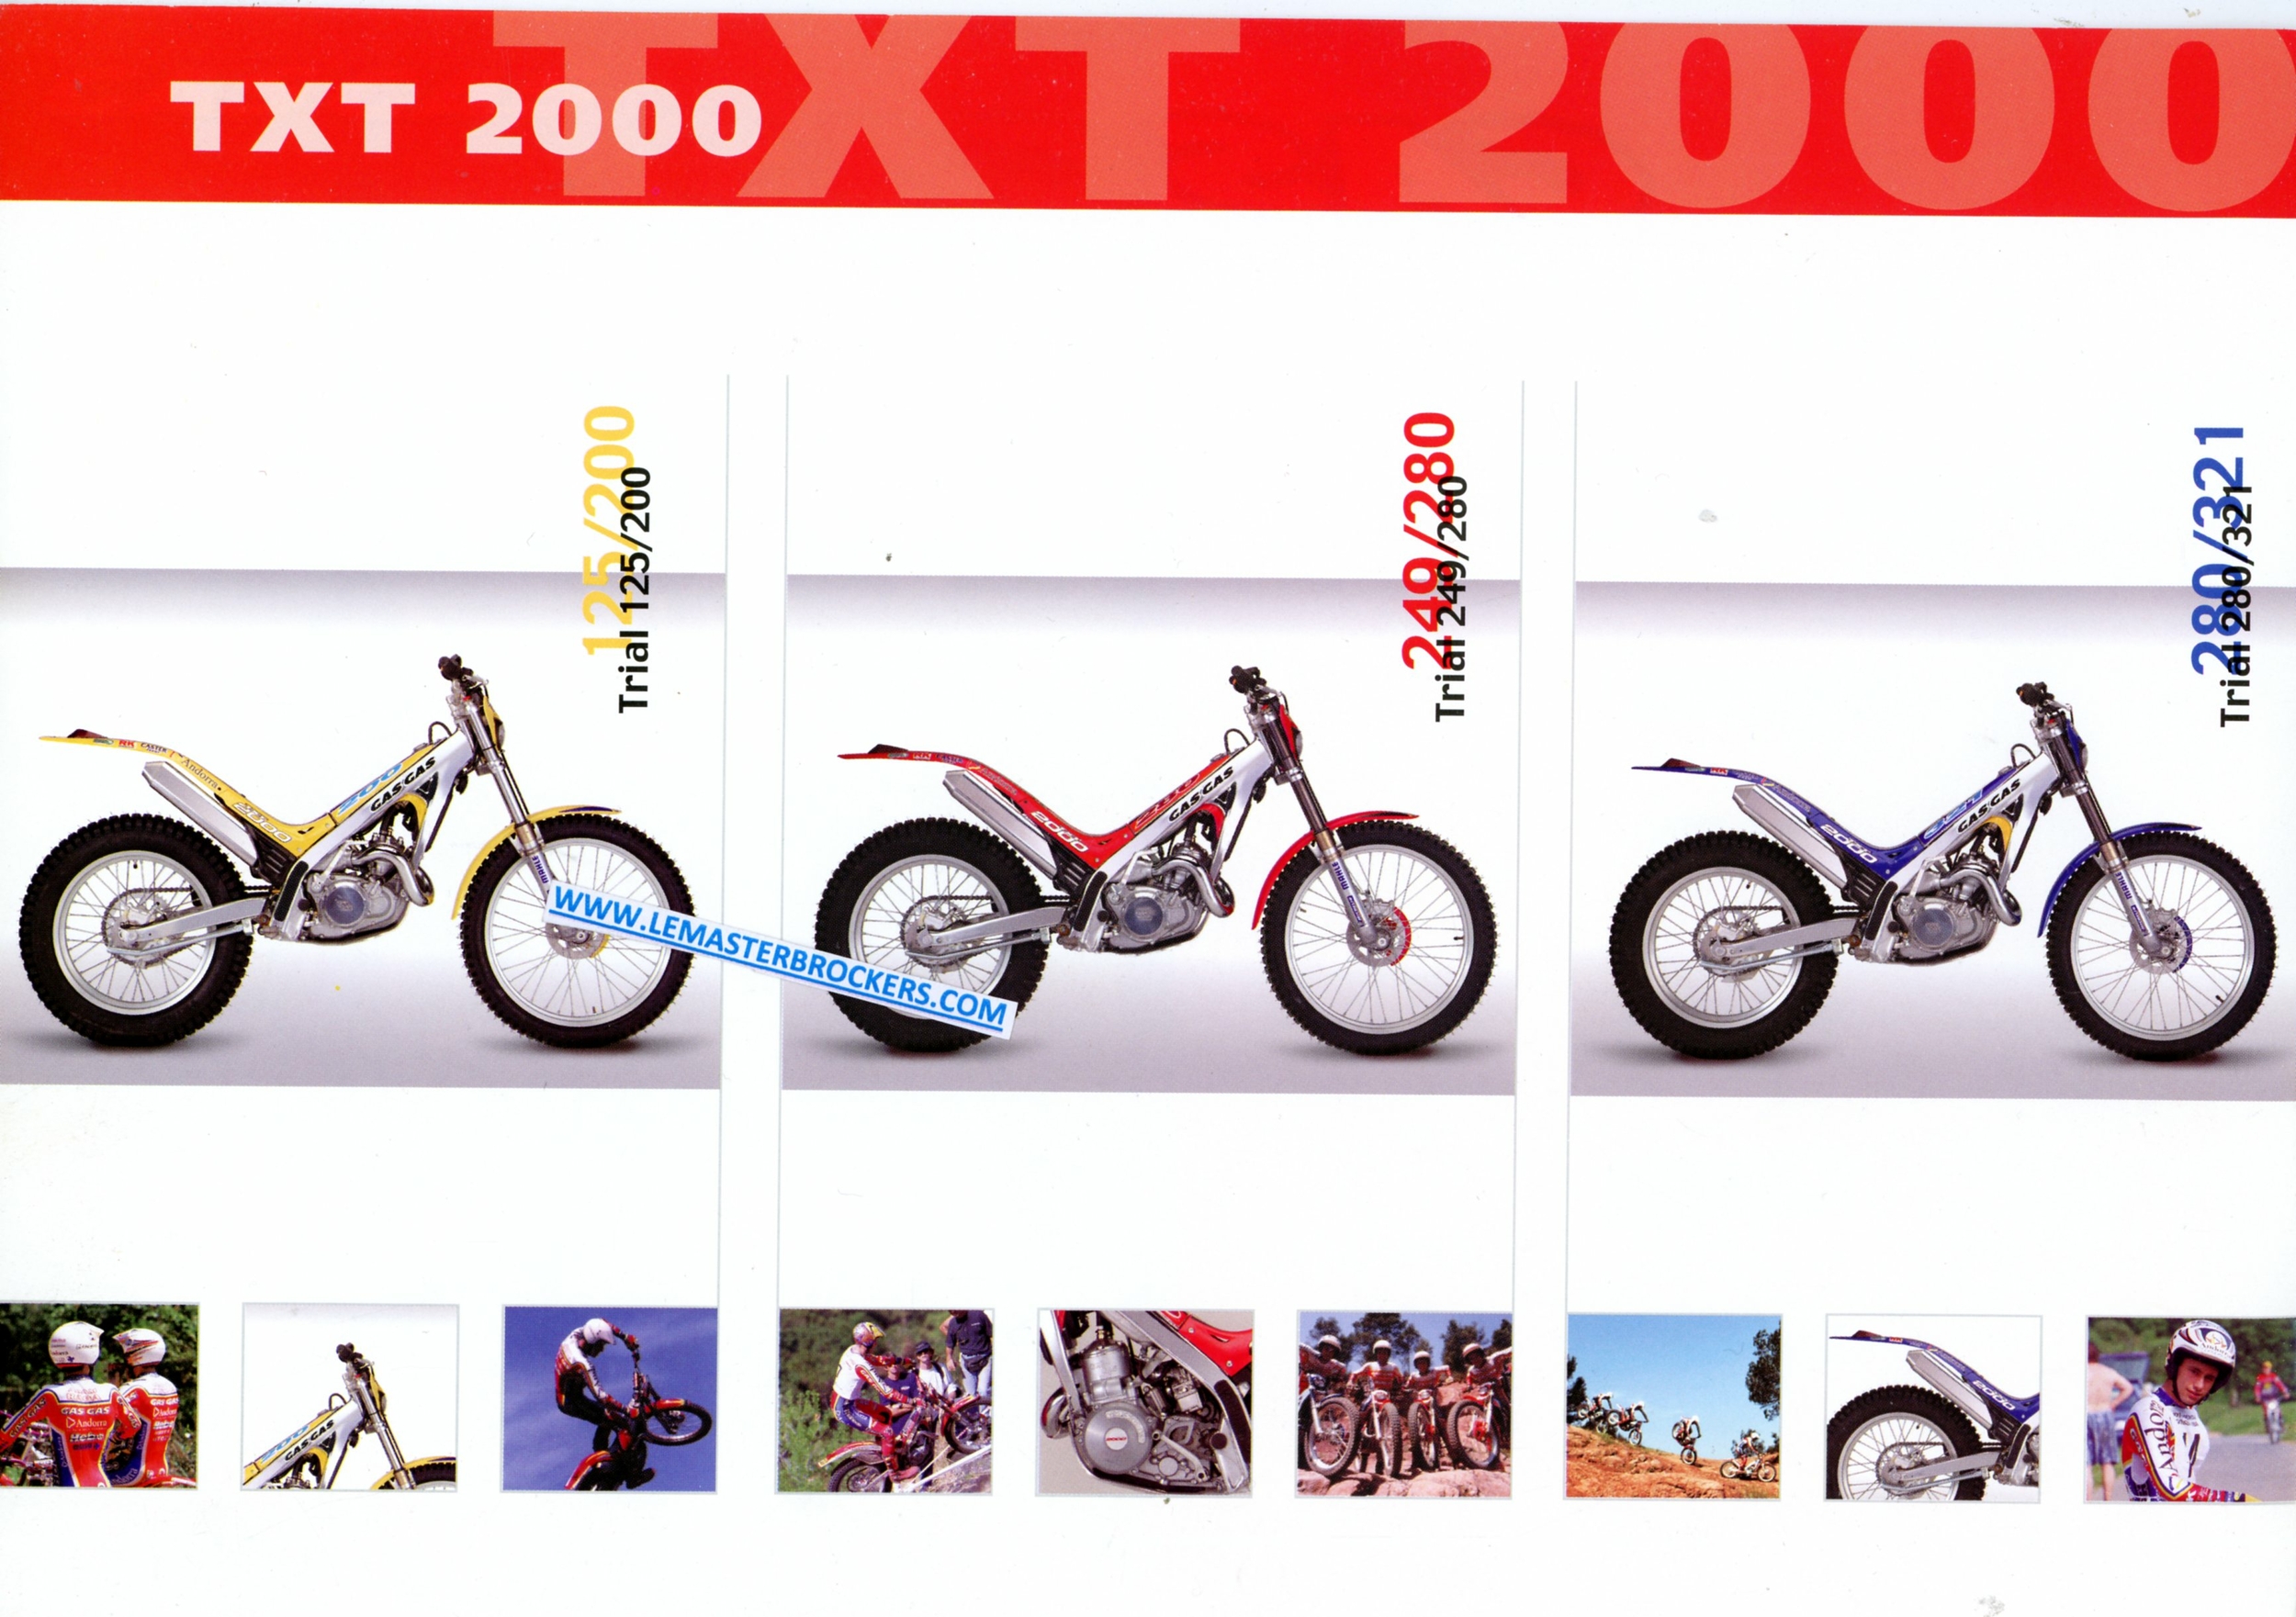 BROCHURE-MOTO-TRIALGASGAS-TXT-2000-200-321-280-LEMASTERBROCKERS